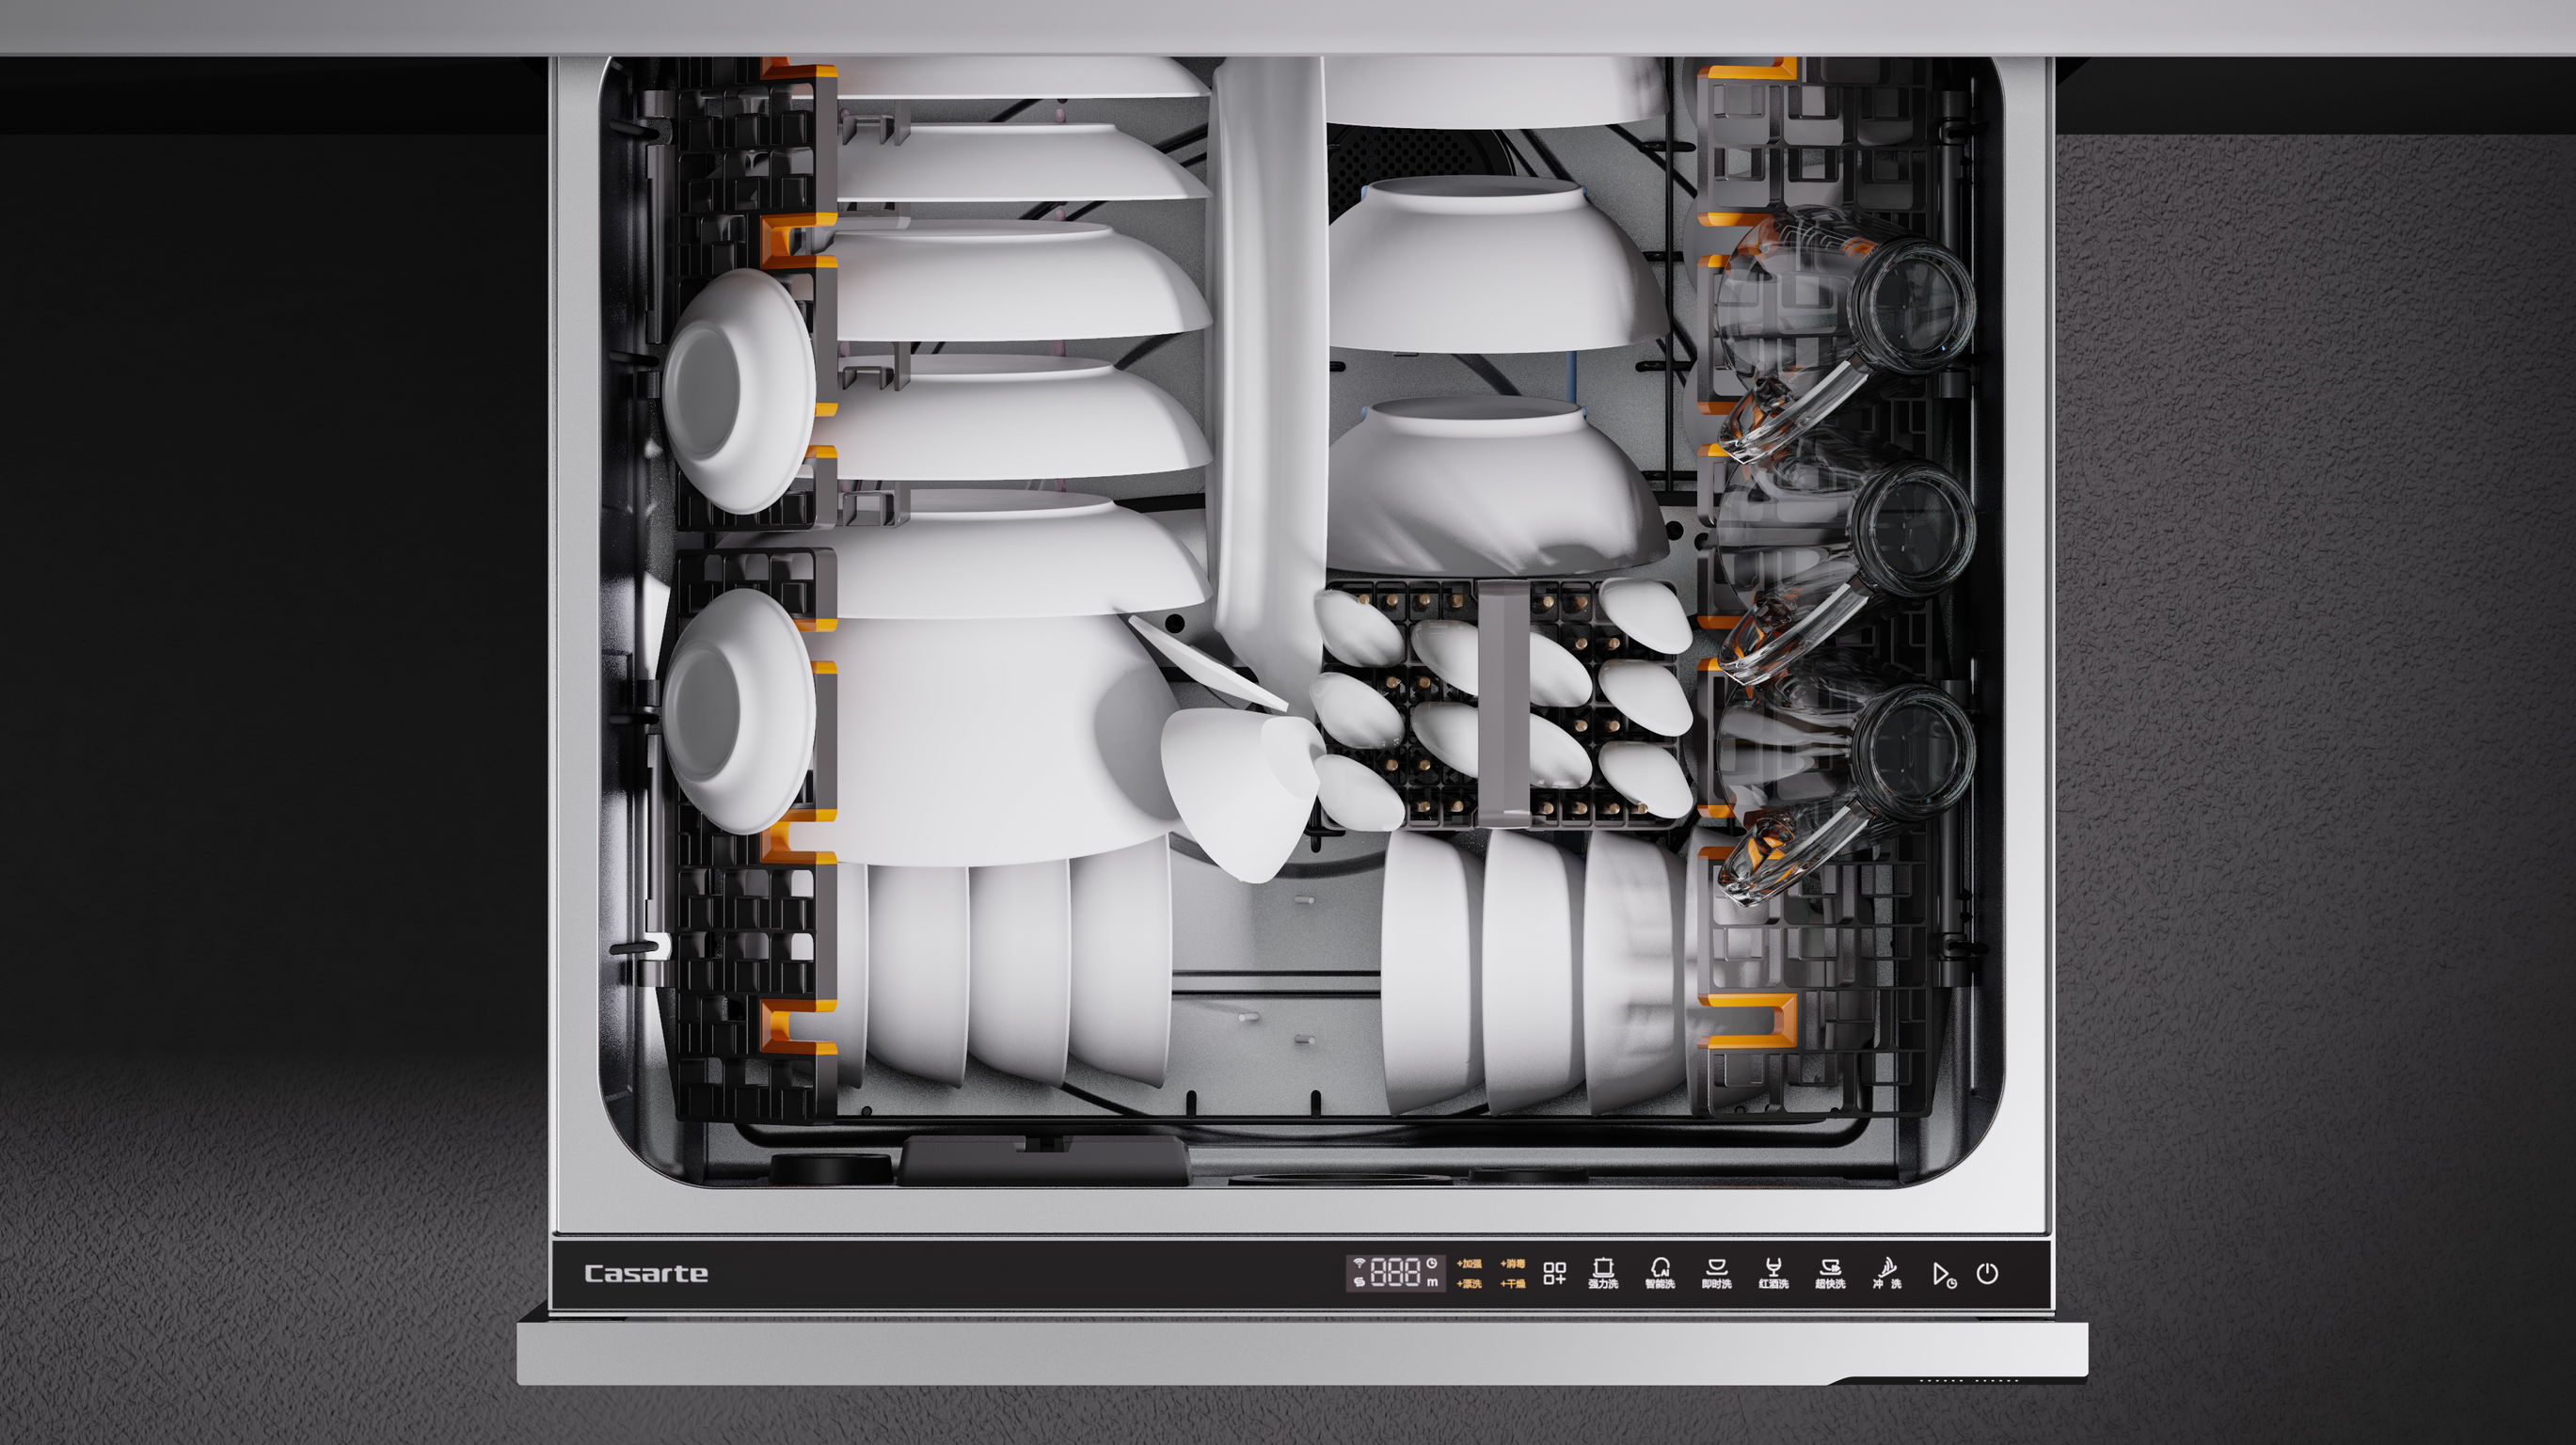 Casarte Double Drawer Kitchen Dishwasher